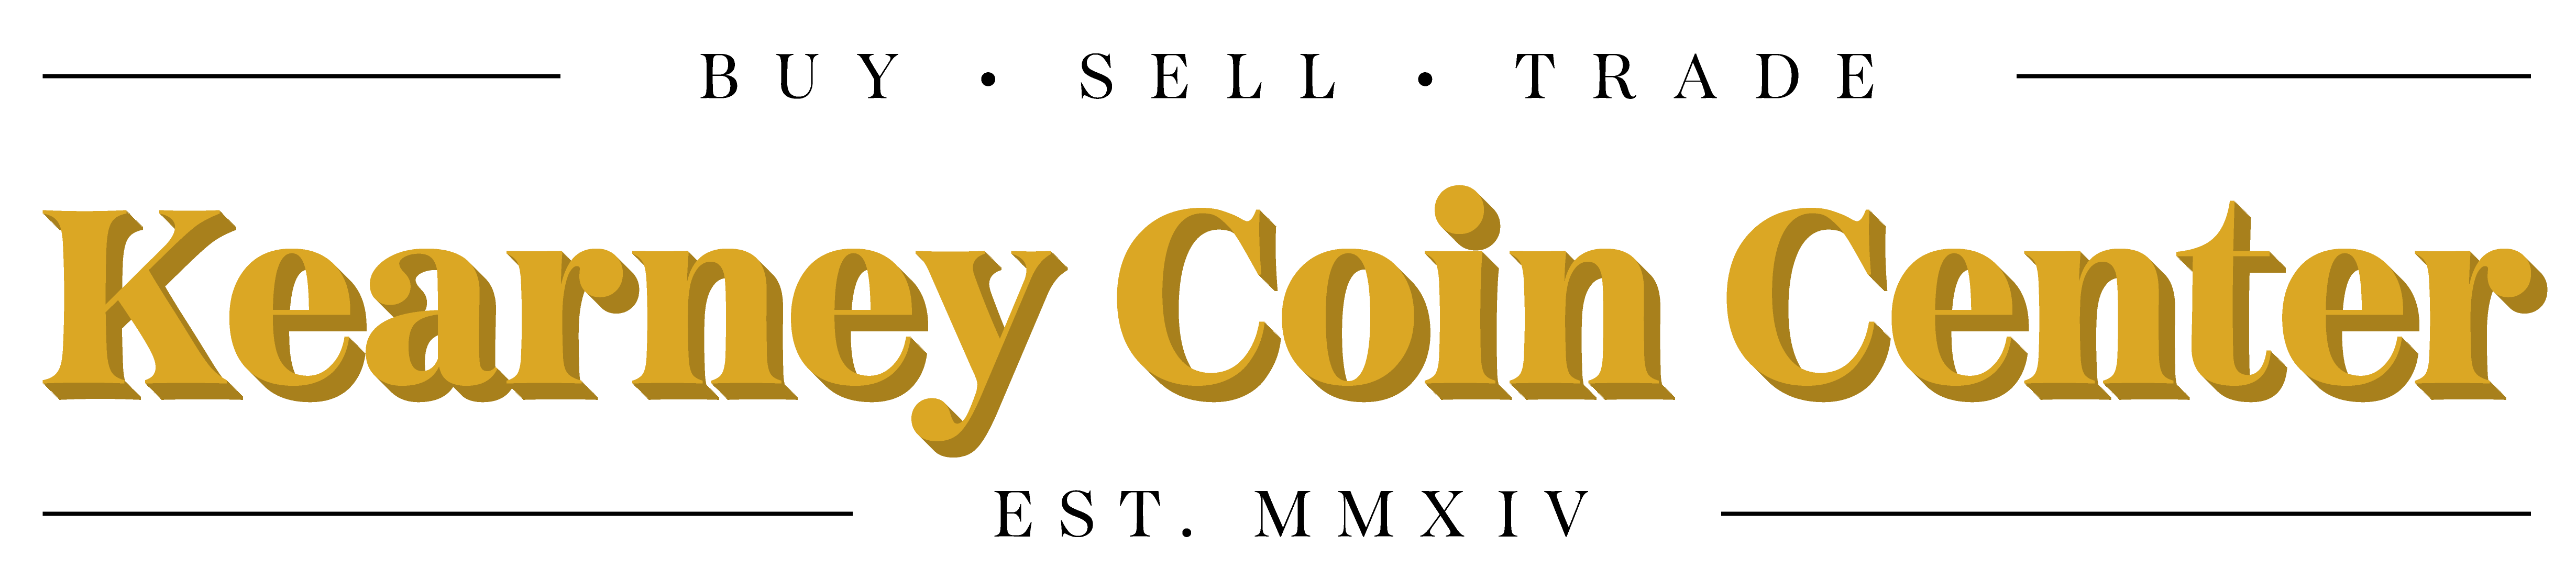 Kearney Coin Center Logo